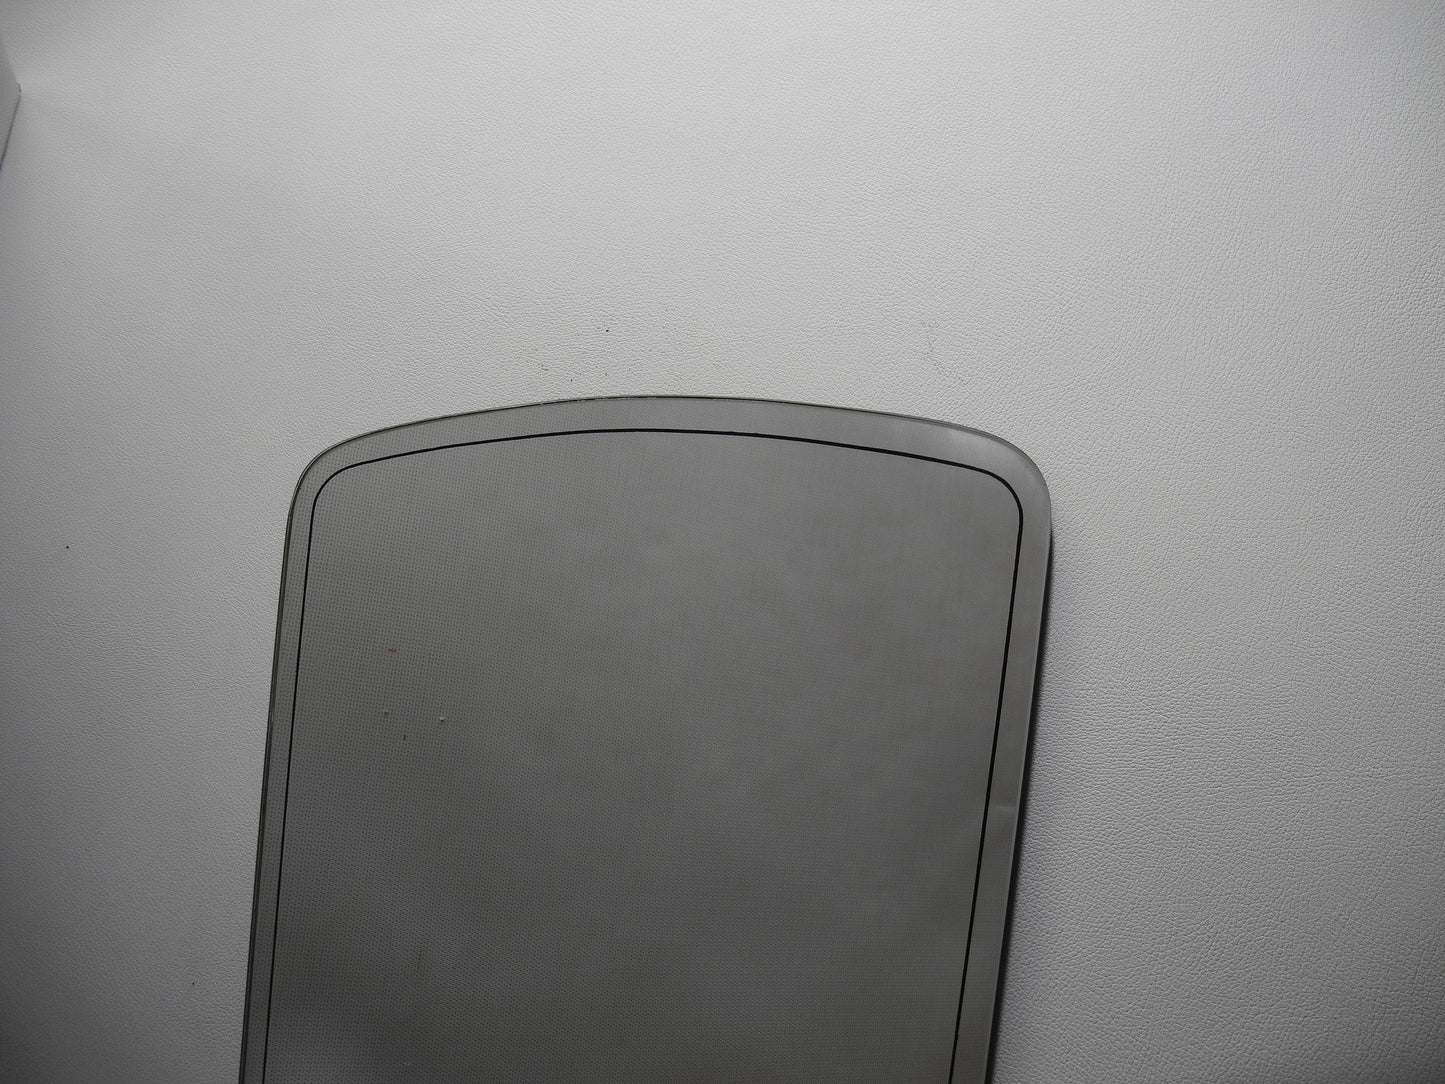 Formschöner Spiegel mit umlaufender schwarzer Umrandung